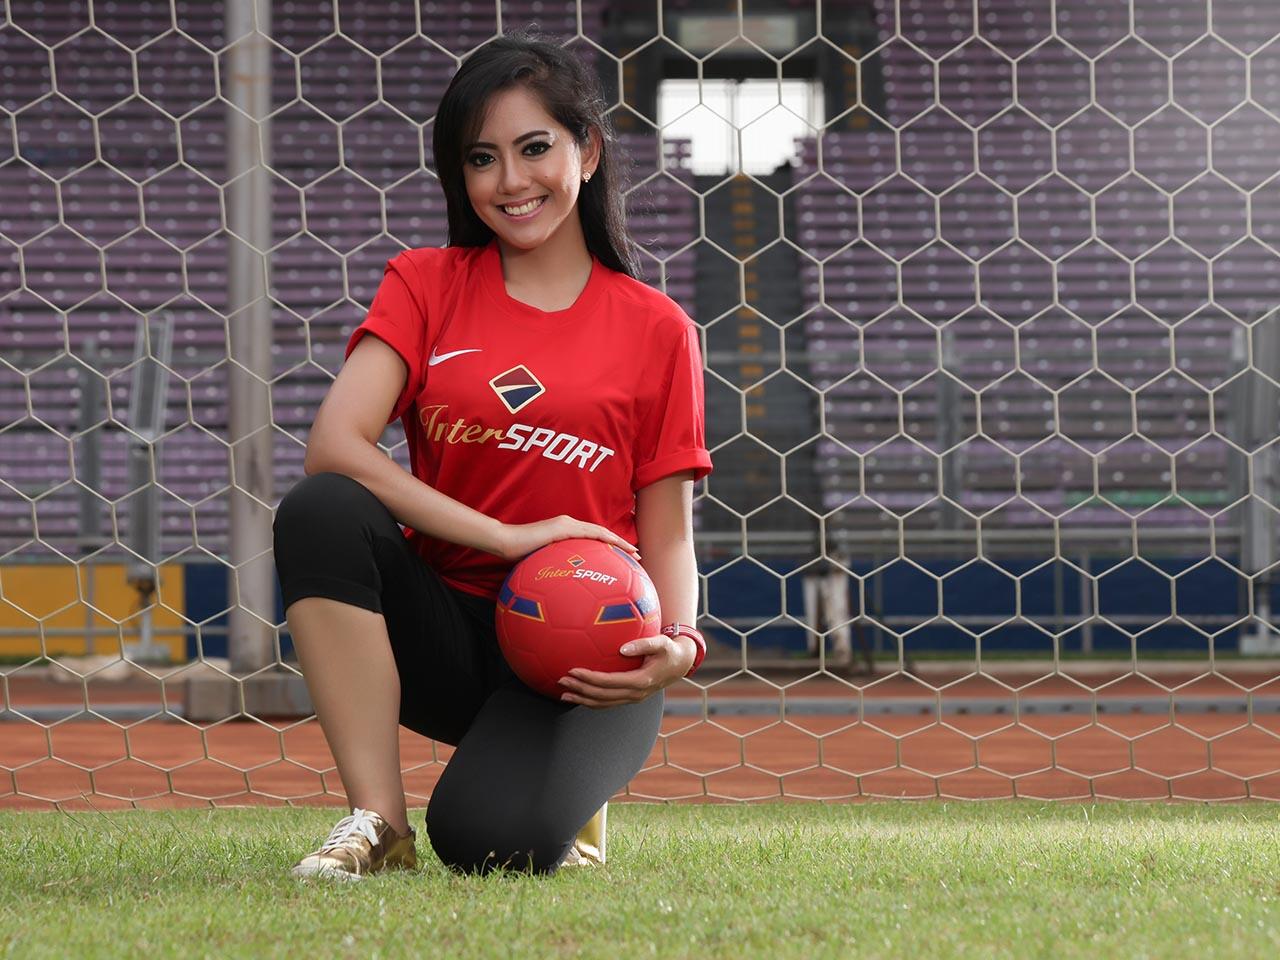 &#91;INILAH&#93; 12 Presenter Olahraga Paling Cantik Di Indonesia